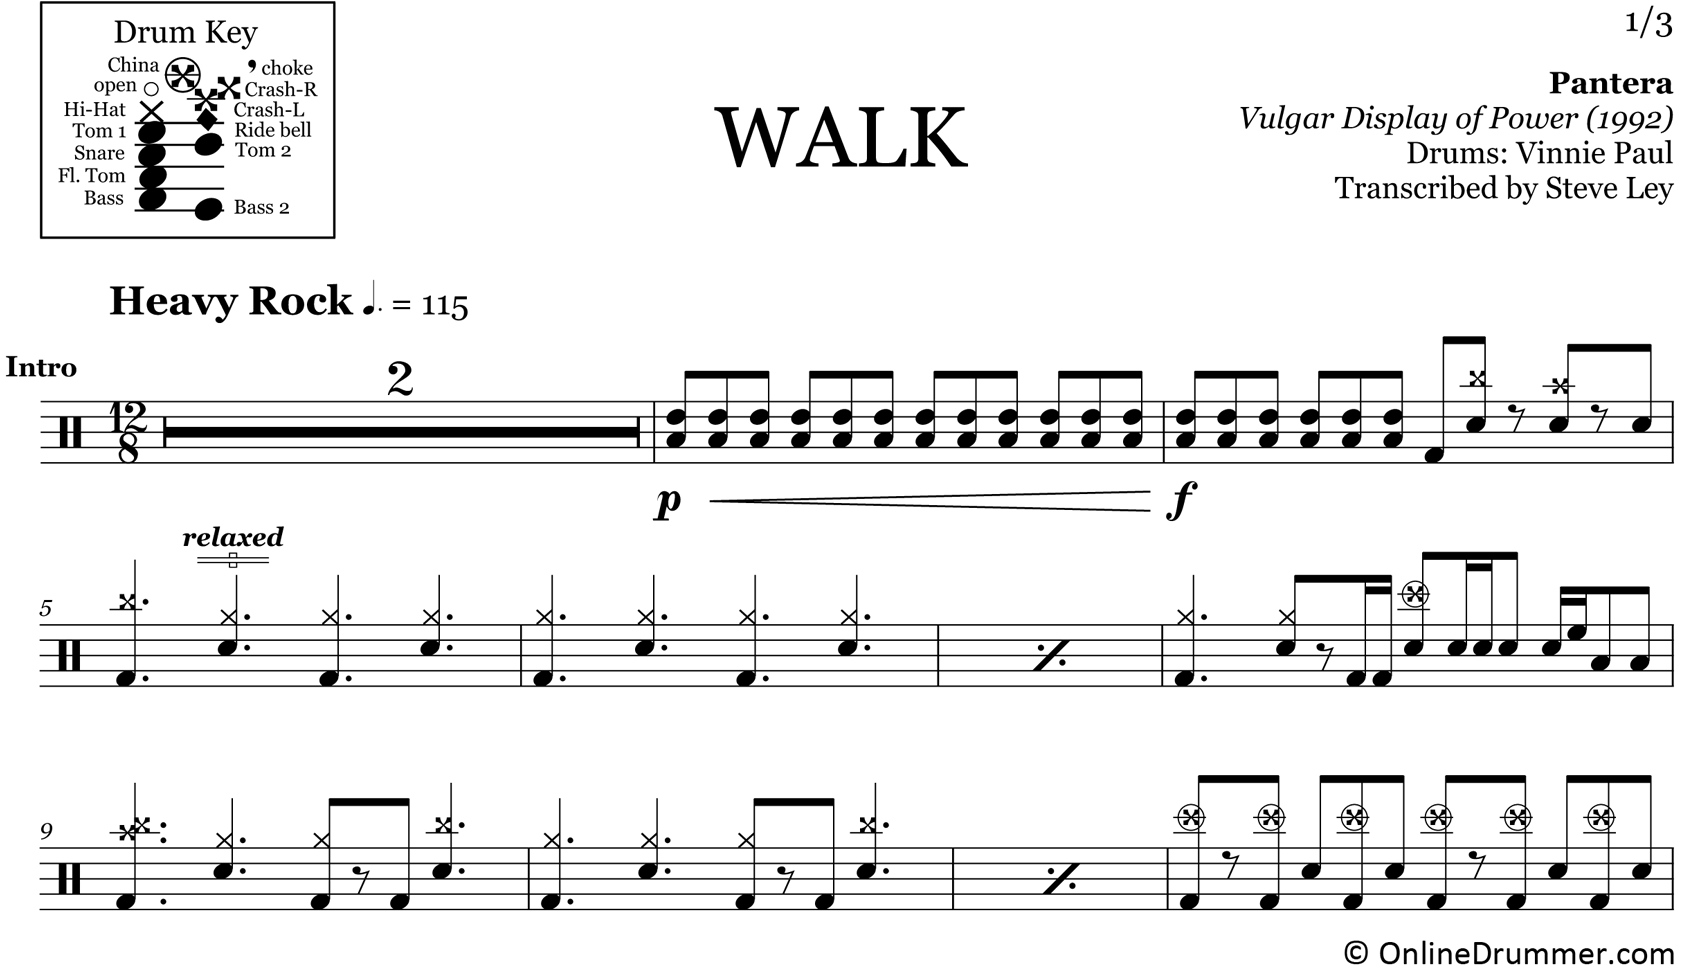 Performance: Walk by Pantera